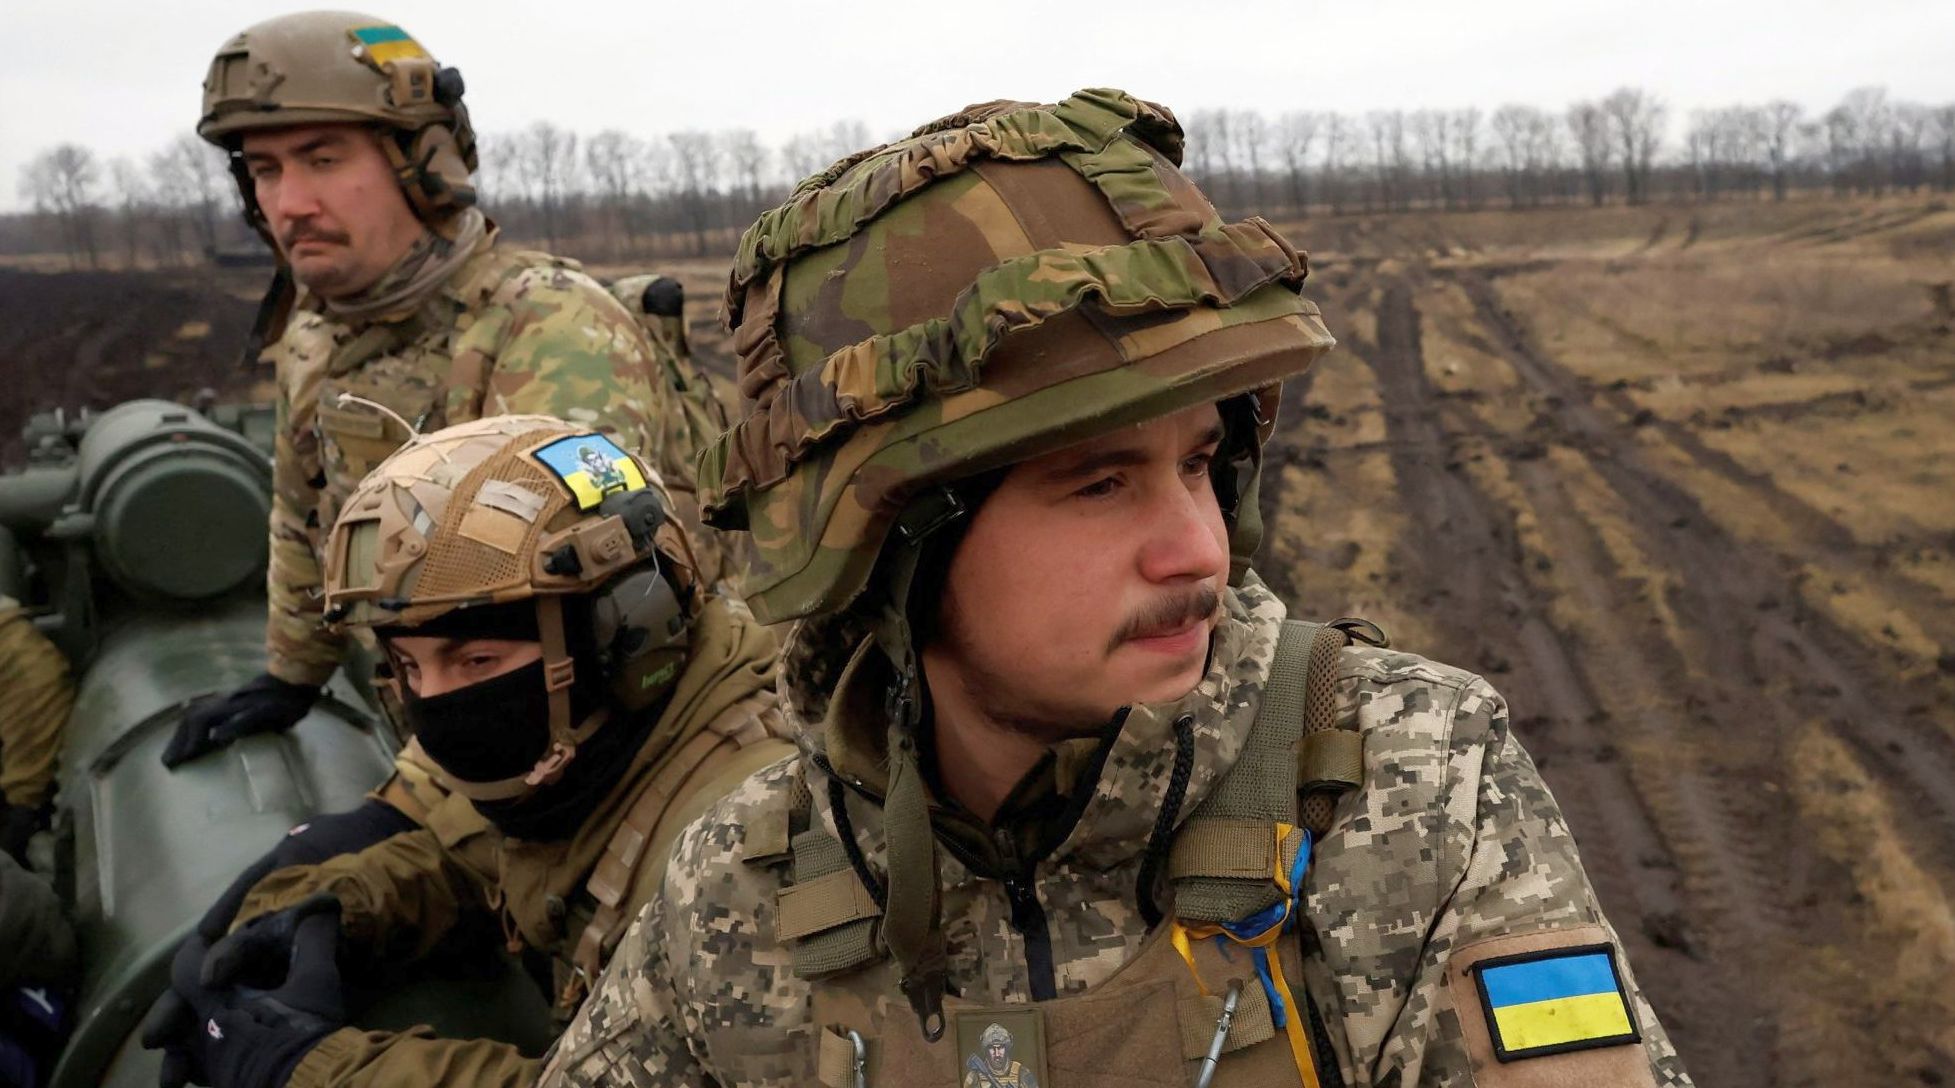 Polonia ar putea ajuta Ucraina să repatrieze bărbaţii de vârsta mobilizării - 1-1714116285.jpg